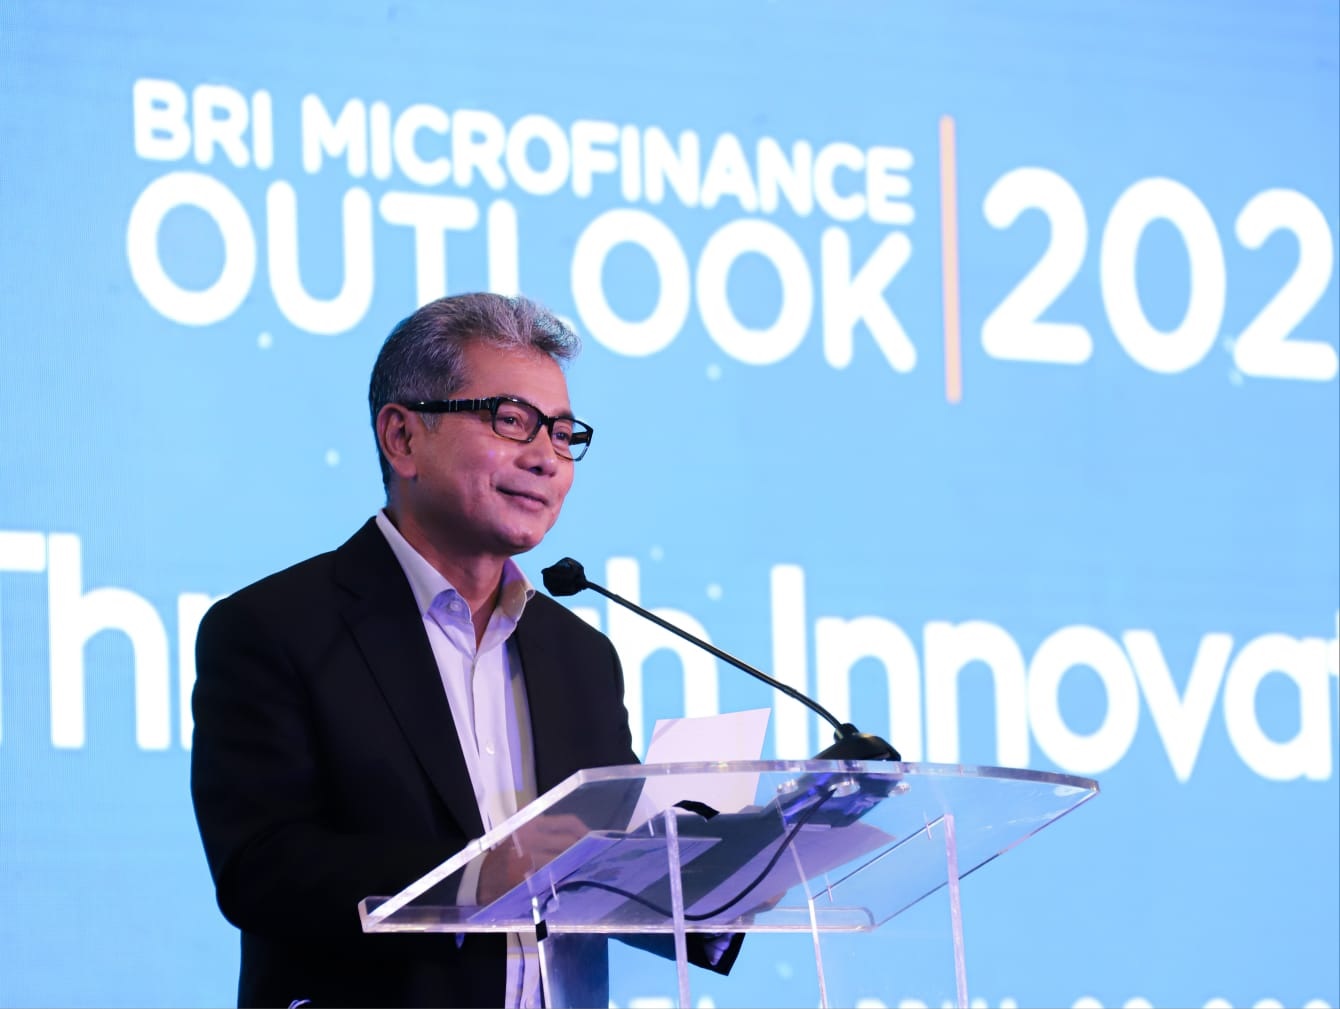  Kinerja Solid, BRI Jadi Bank Terbesar di Indonesia versi Fortune Indonesia 100